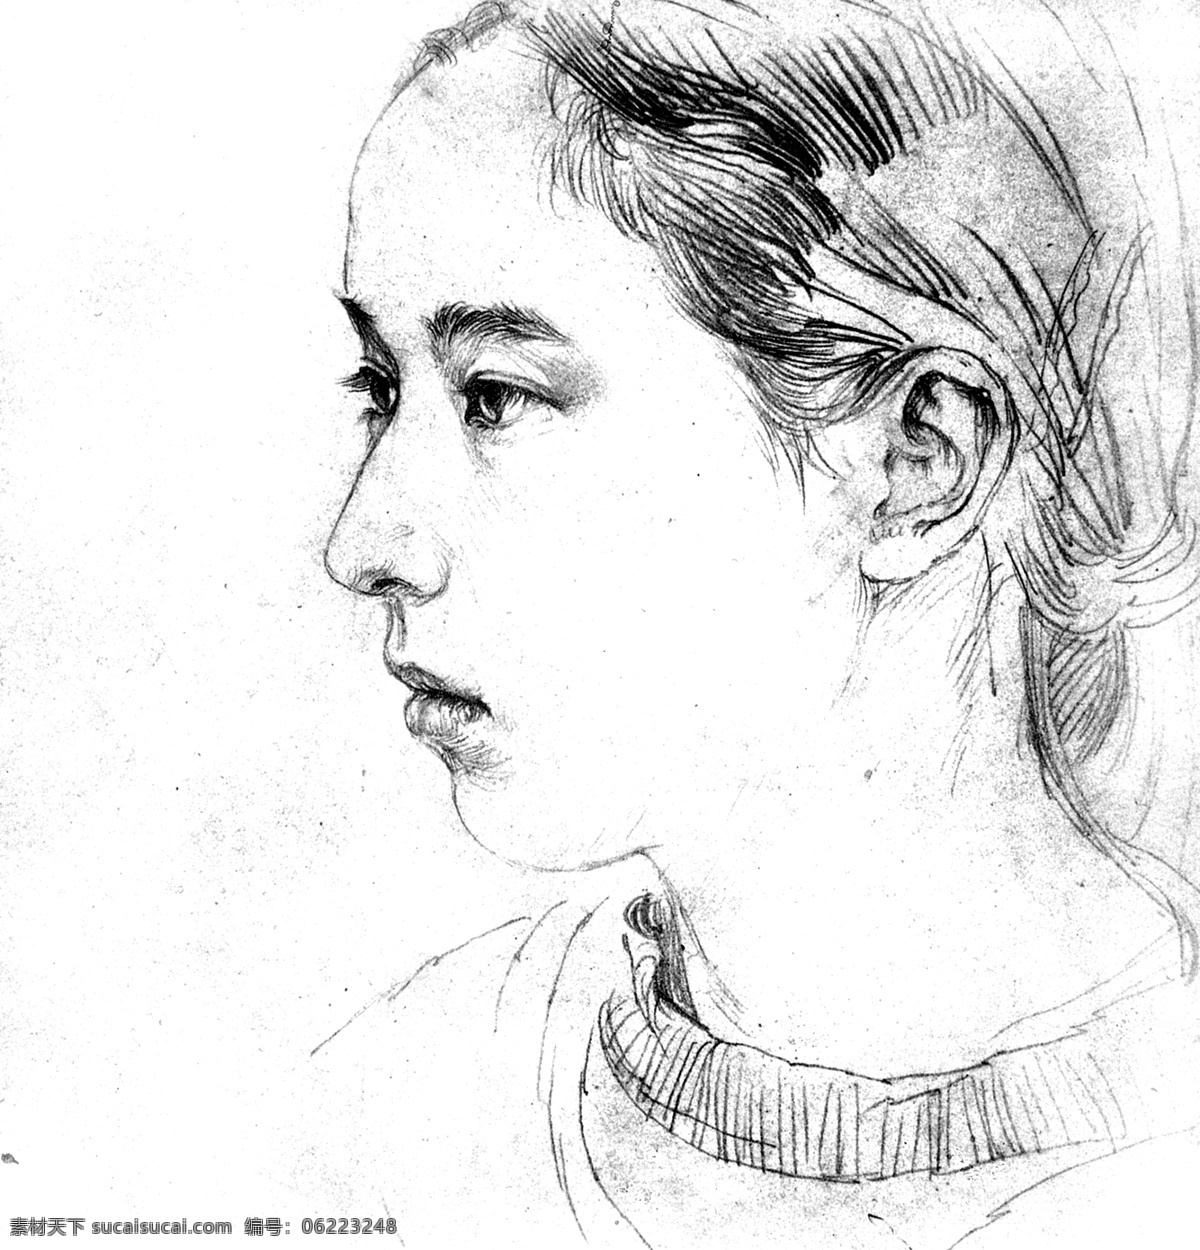 何家英手稿 中国 画家 何家英 素描 手稿 头部特写 少女 绘画书法 文化艺术